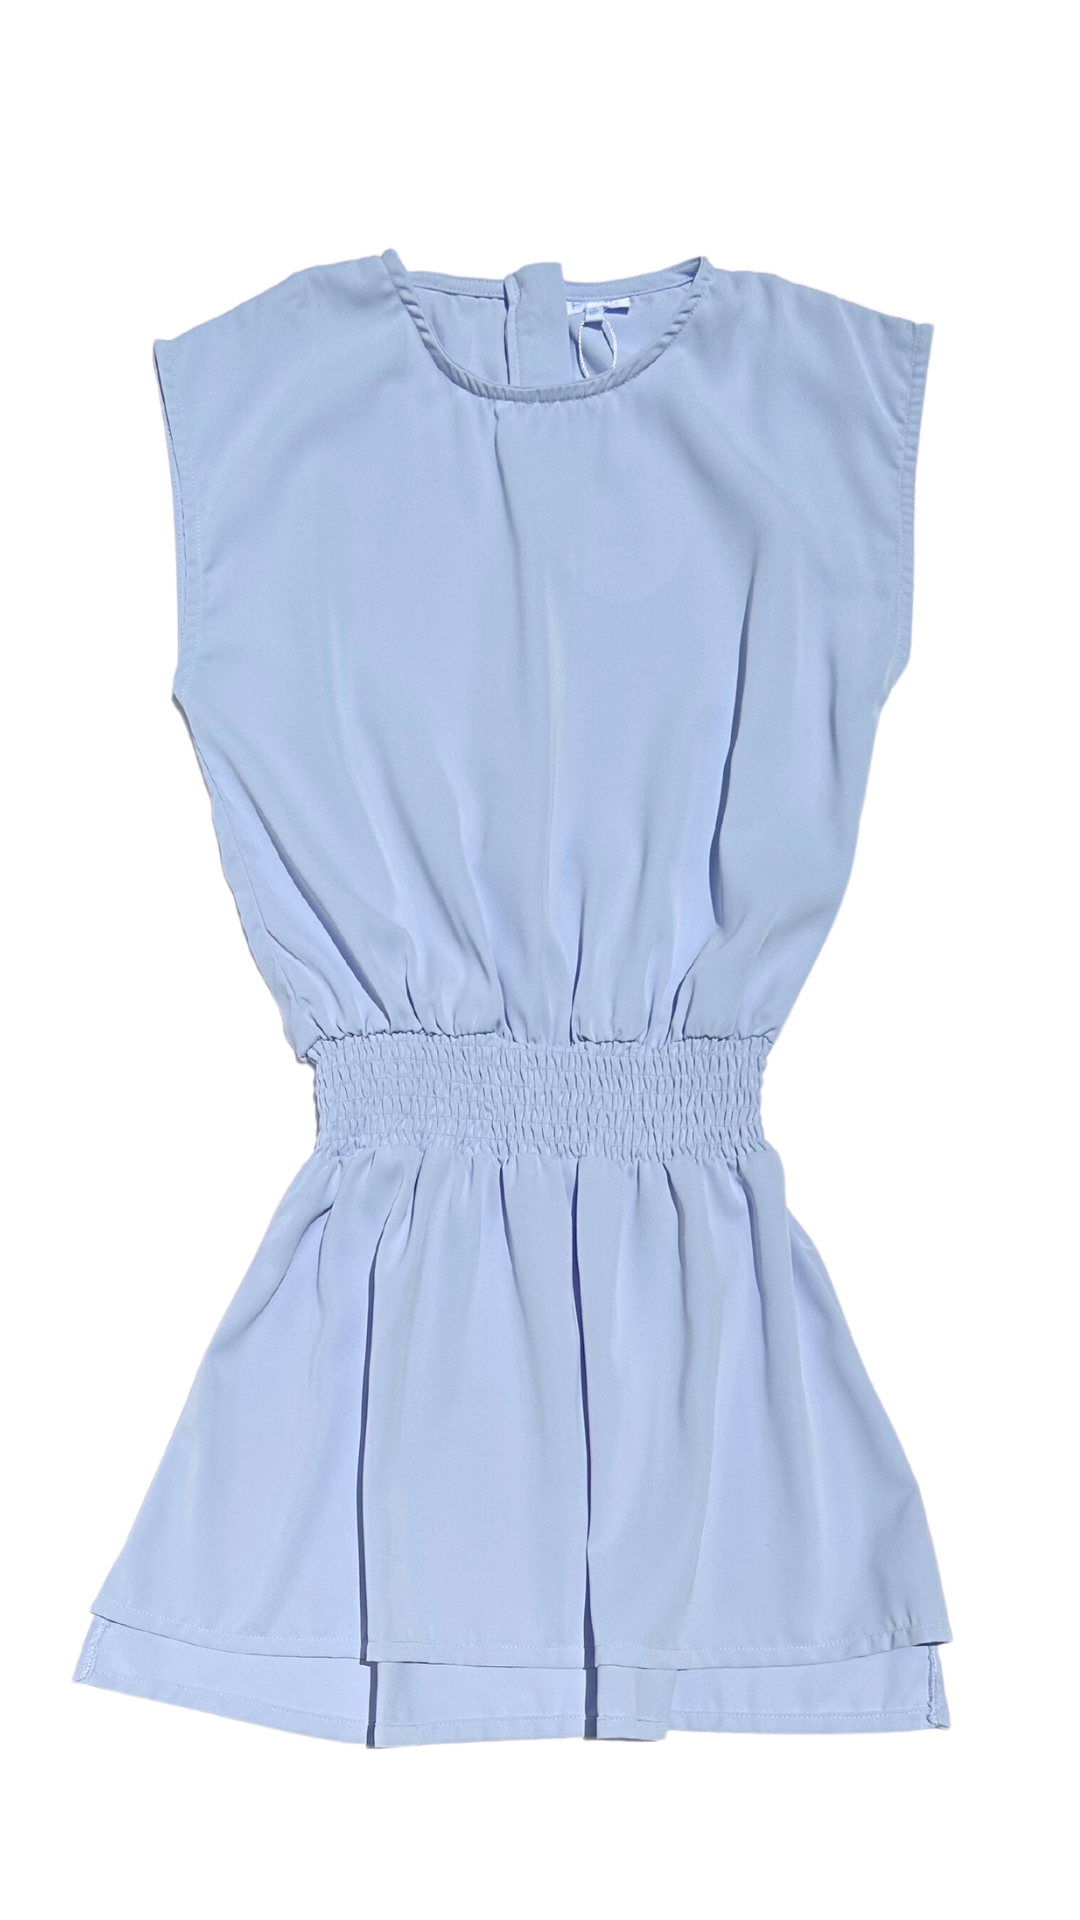 Josie Dress Pleat Blue